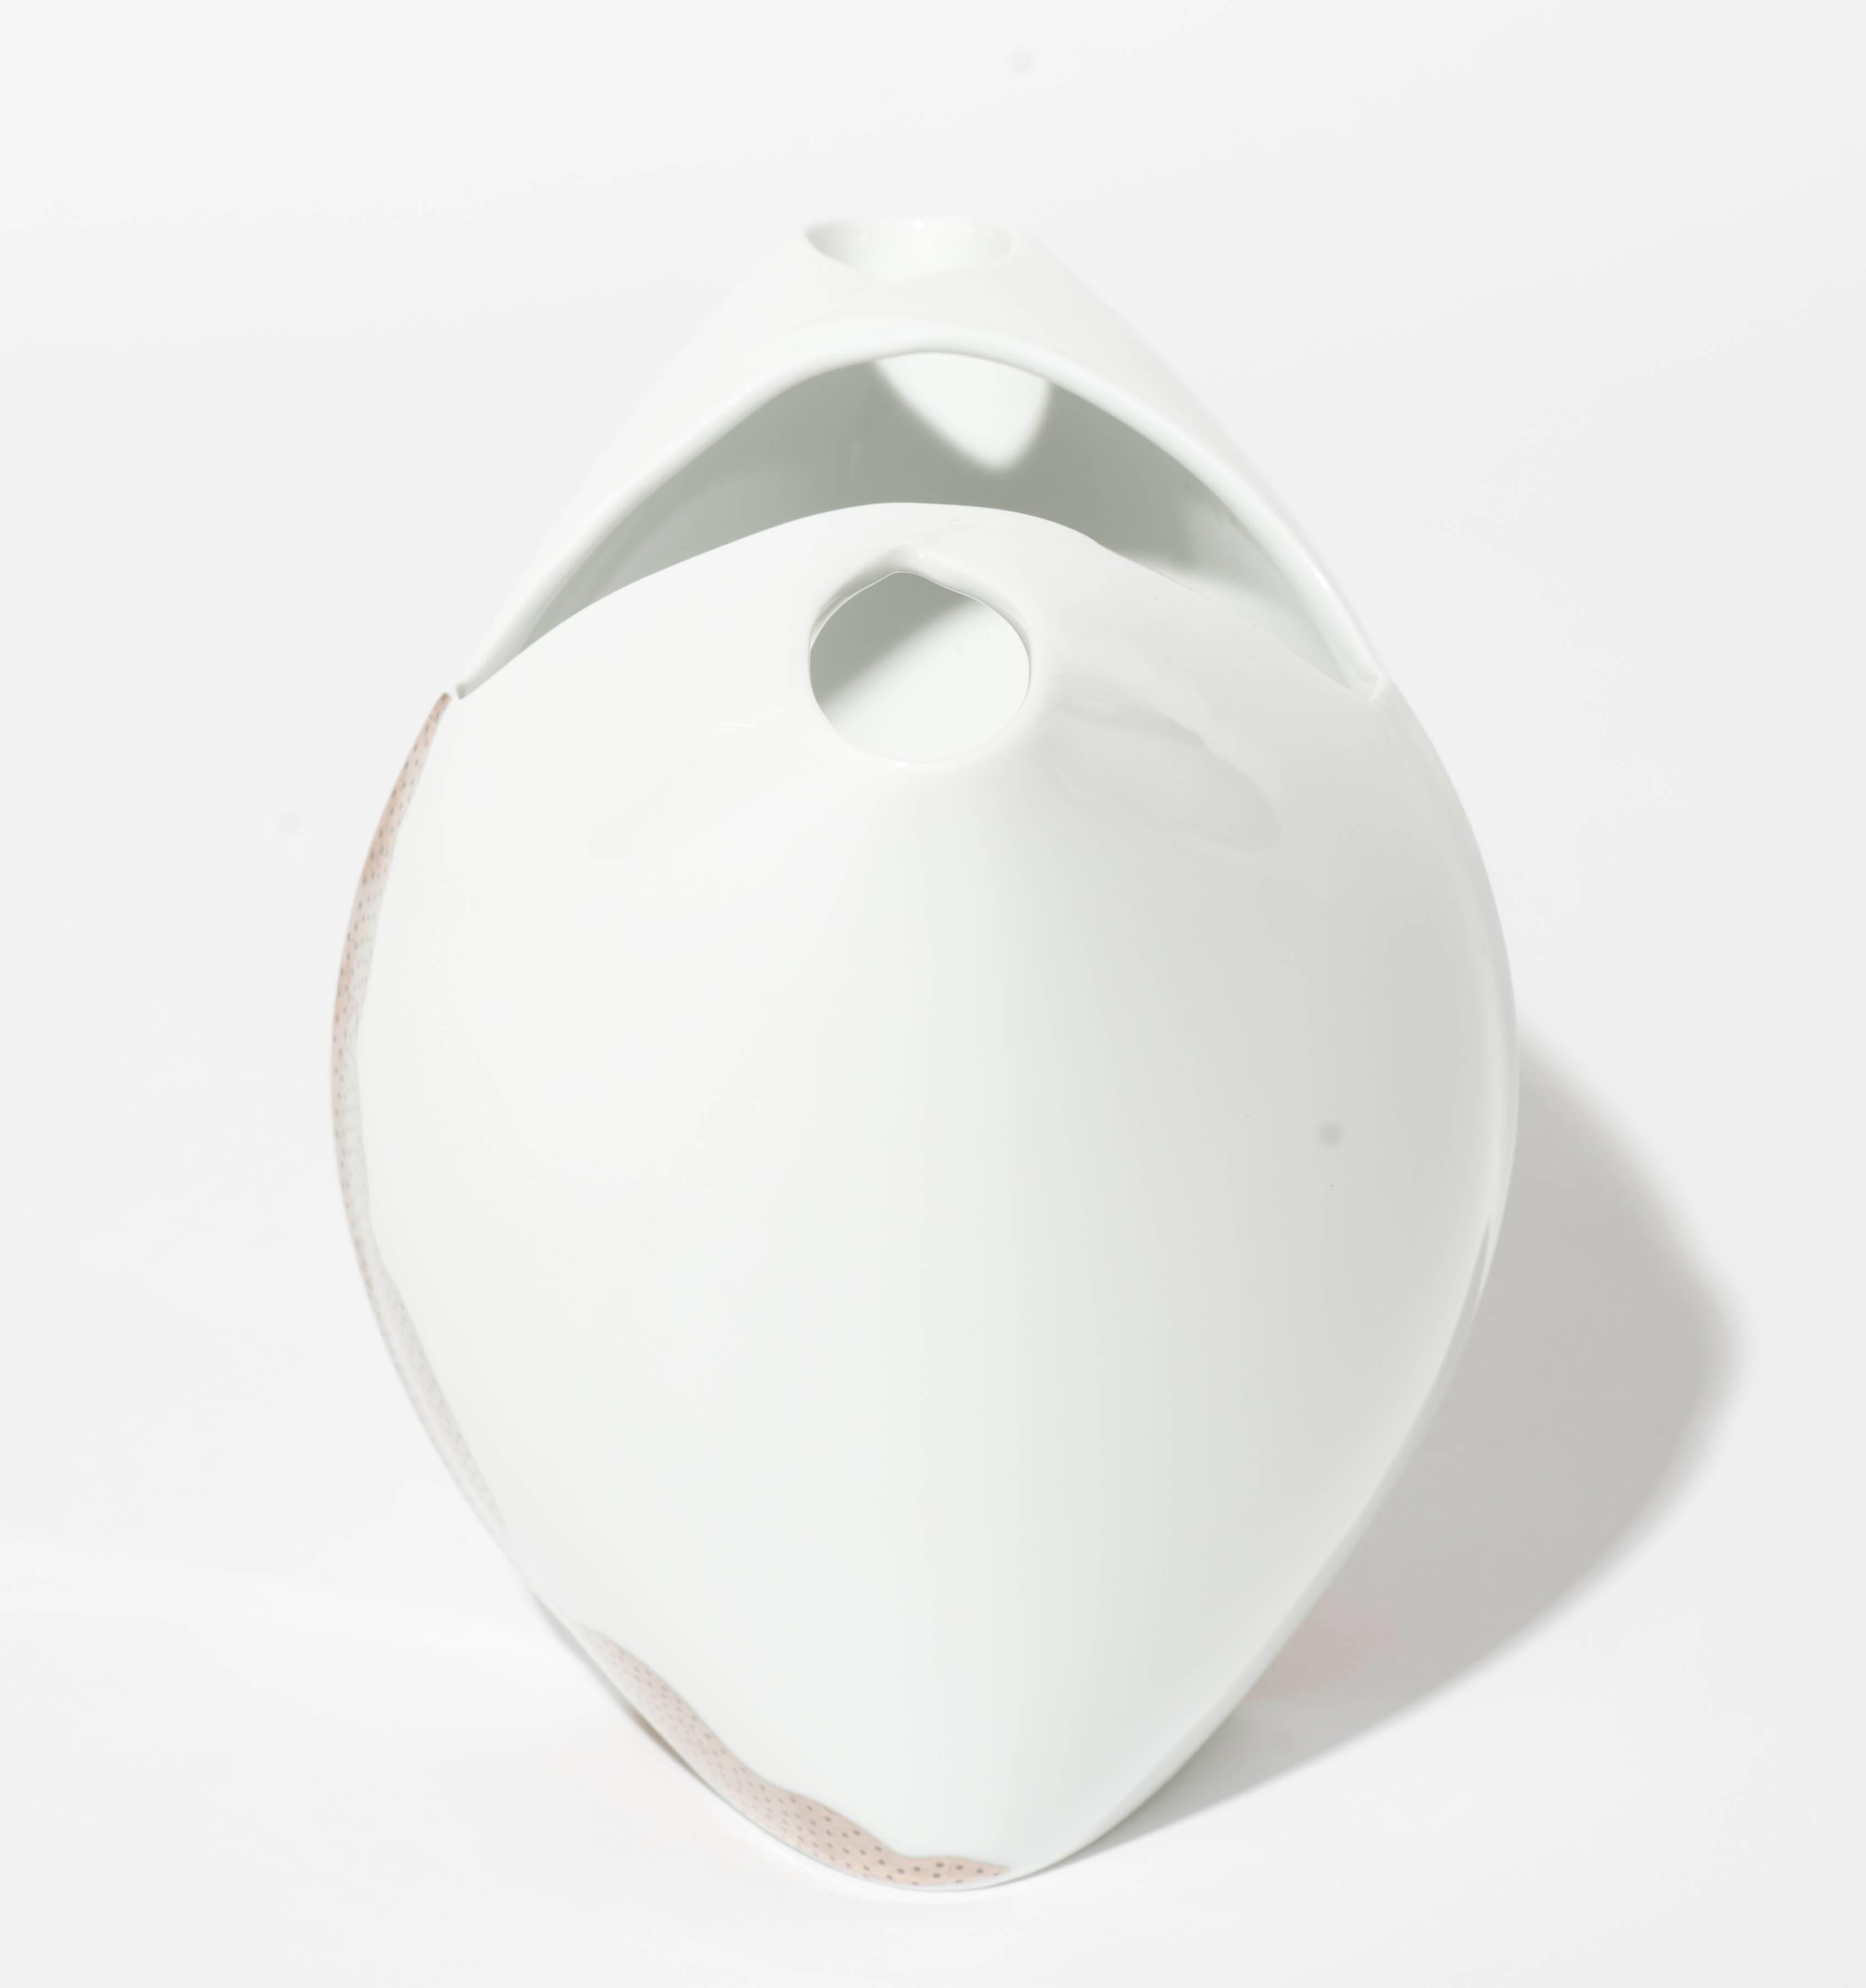 Dies ist das kleinste Modell der Tusca-Vasen-Serie, die von Lino Sabattini entworfen und von Rosenthal in den 1980er Jahren produziert wurde. Die weiße Porzellanvase ist mit einem silberfarbenen Motiv versehen und befindet sich in einem sehr guten